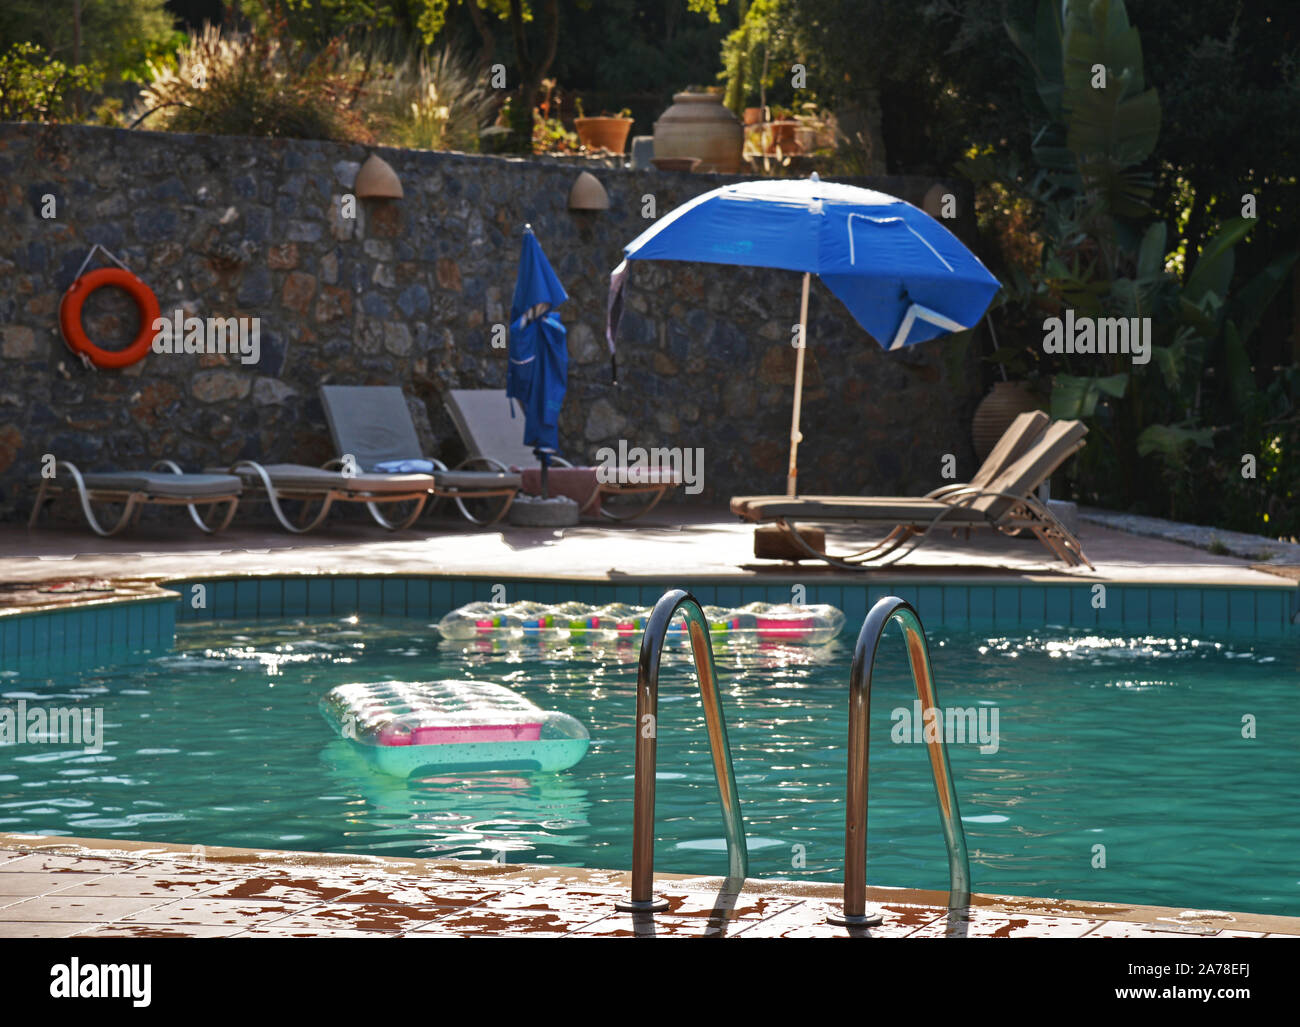 Anzeigen von leeren Swimmingpool mit aufblasbaren Matratzen floating und Wasser spritzte Fliesen am Rand. Konzept: Schwimmbad Sicherheit. Stockfoto